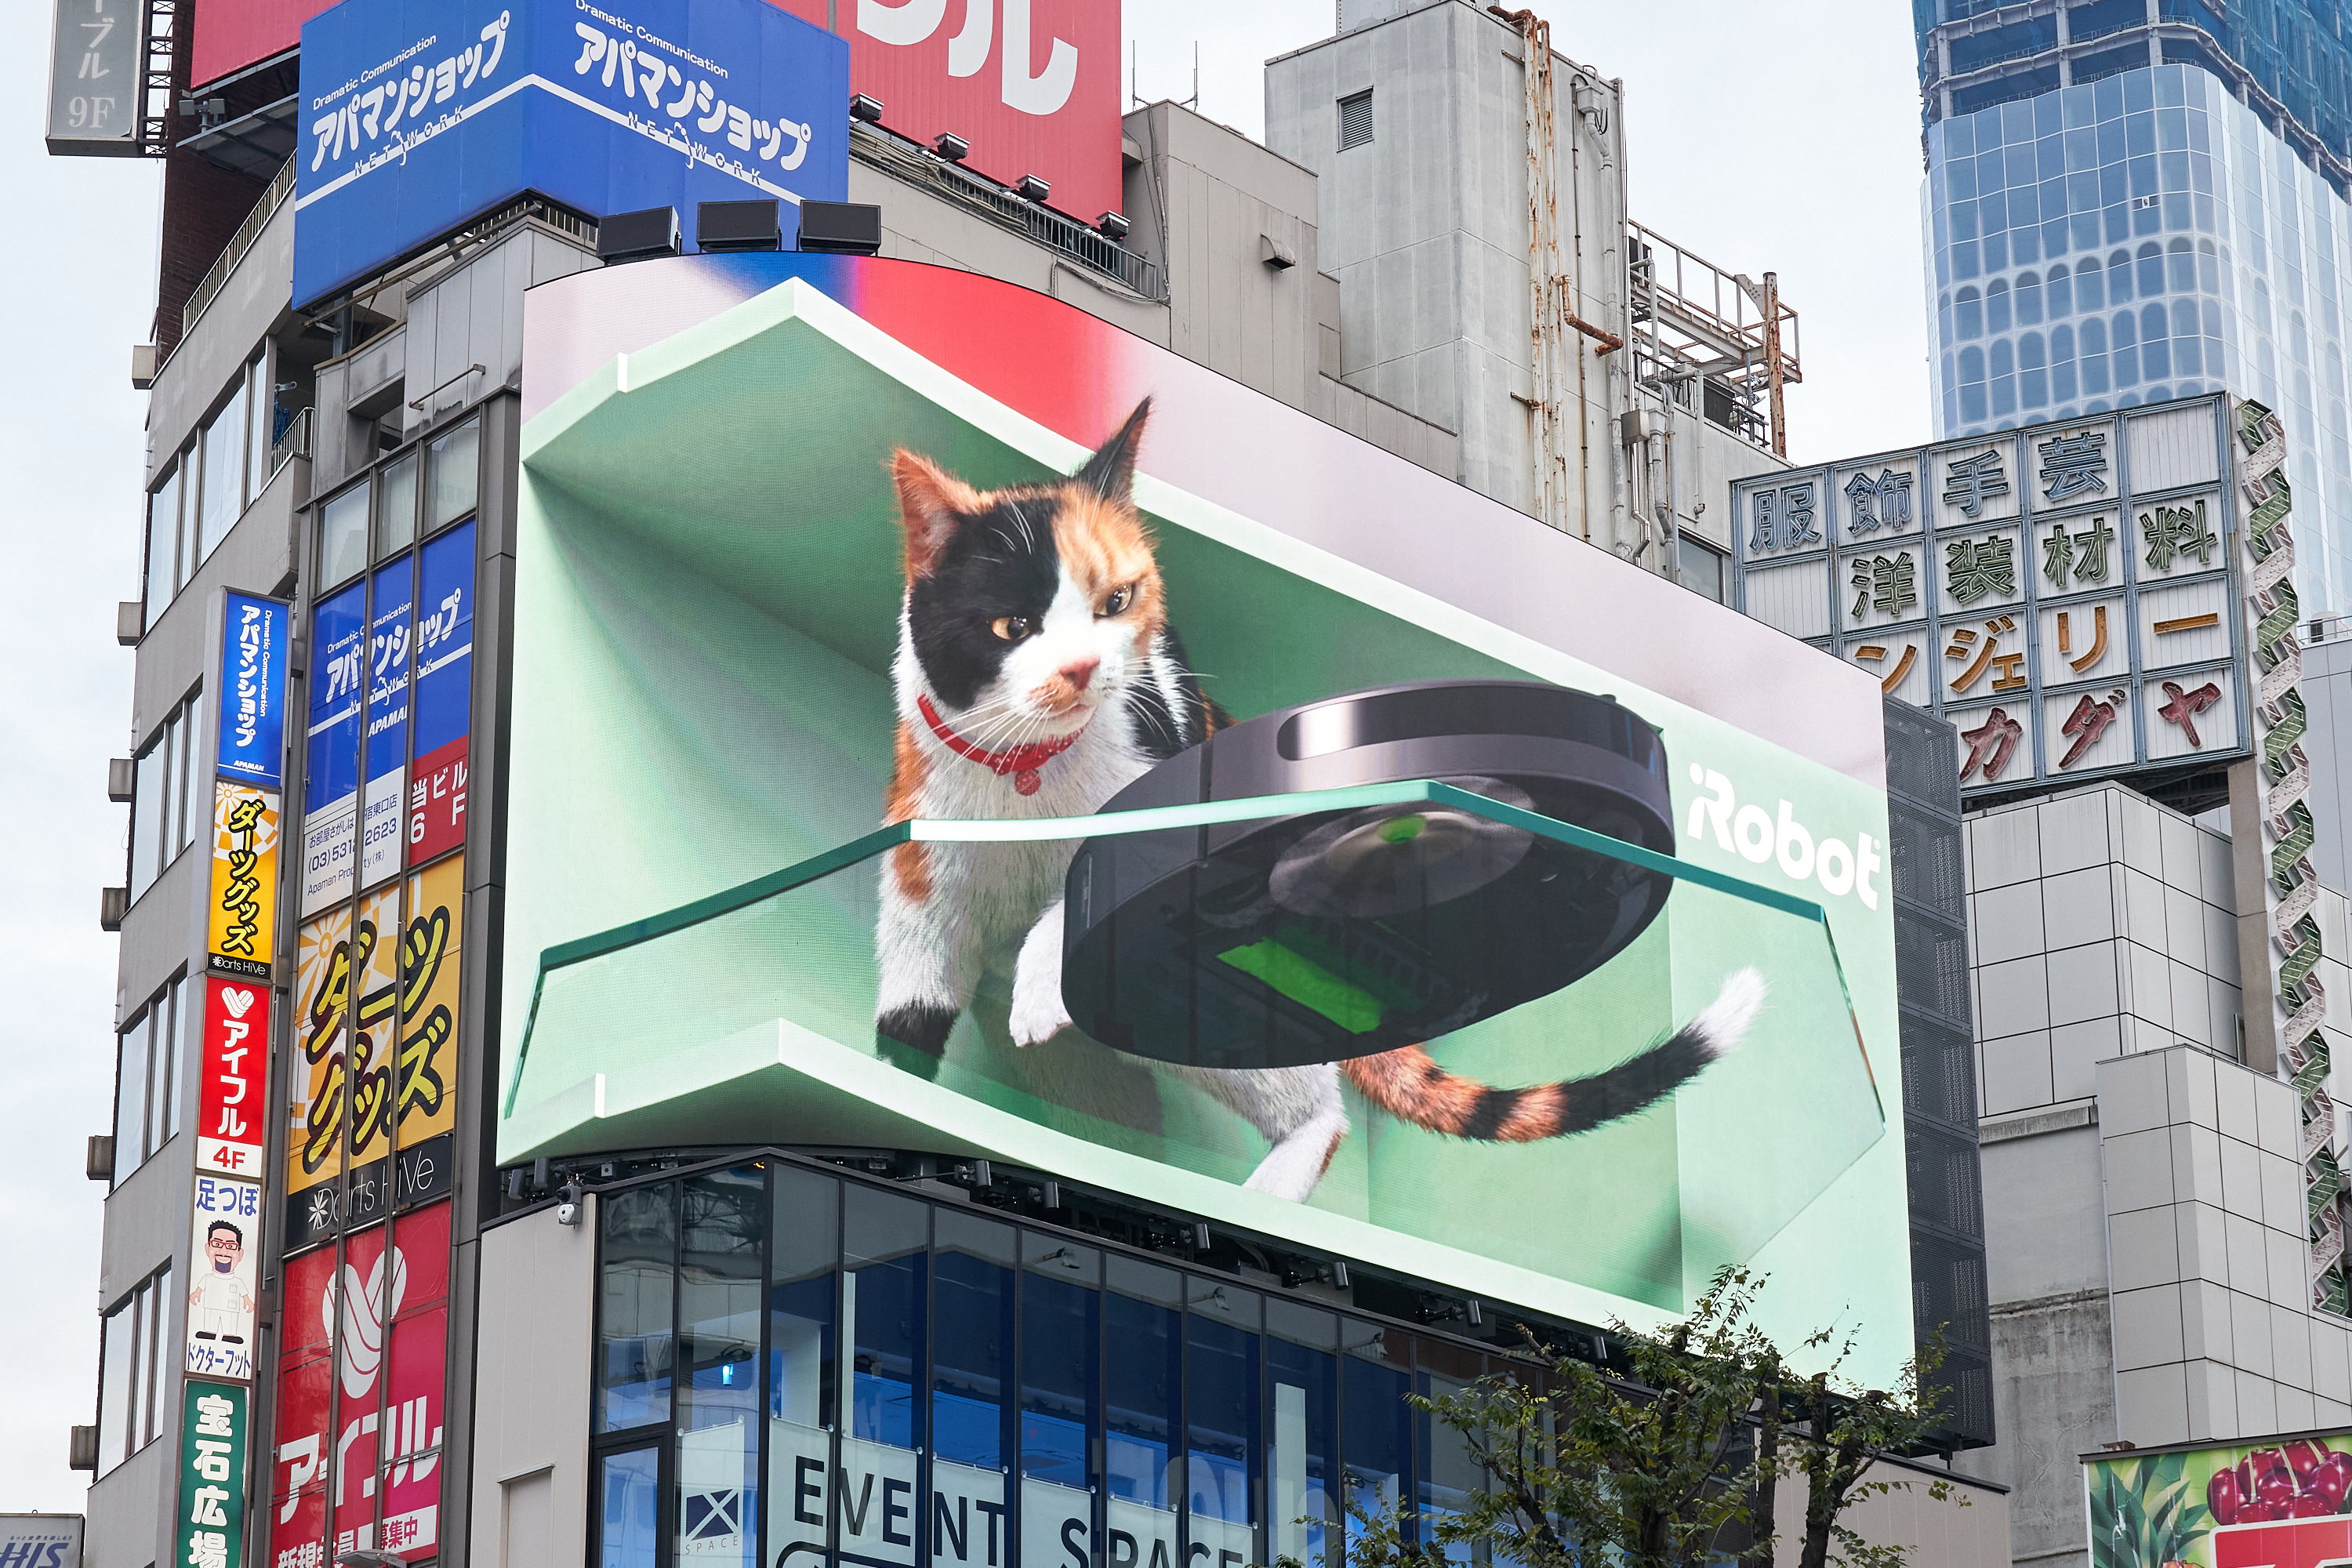 世界中に拡散された新宿東口の3d巨大猫シリーズ最新作 ネコにルンバを 本日より公開開始 アイロボットジャパン合同会社のプレスリリース